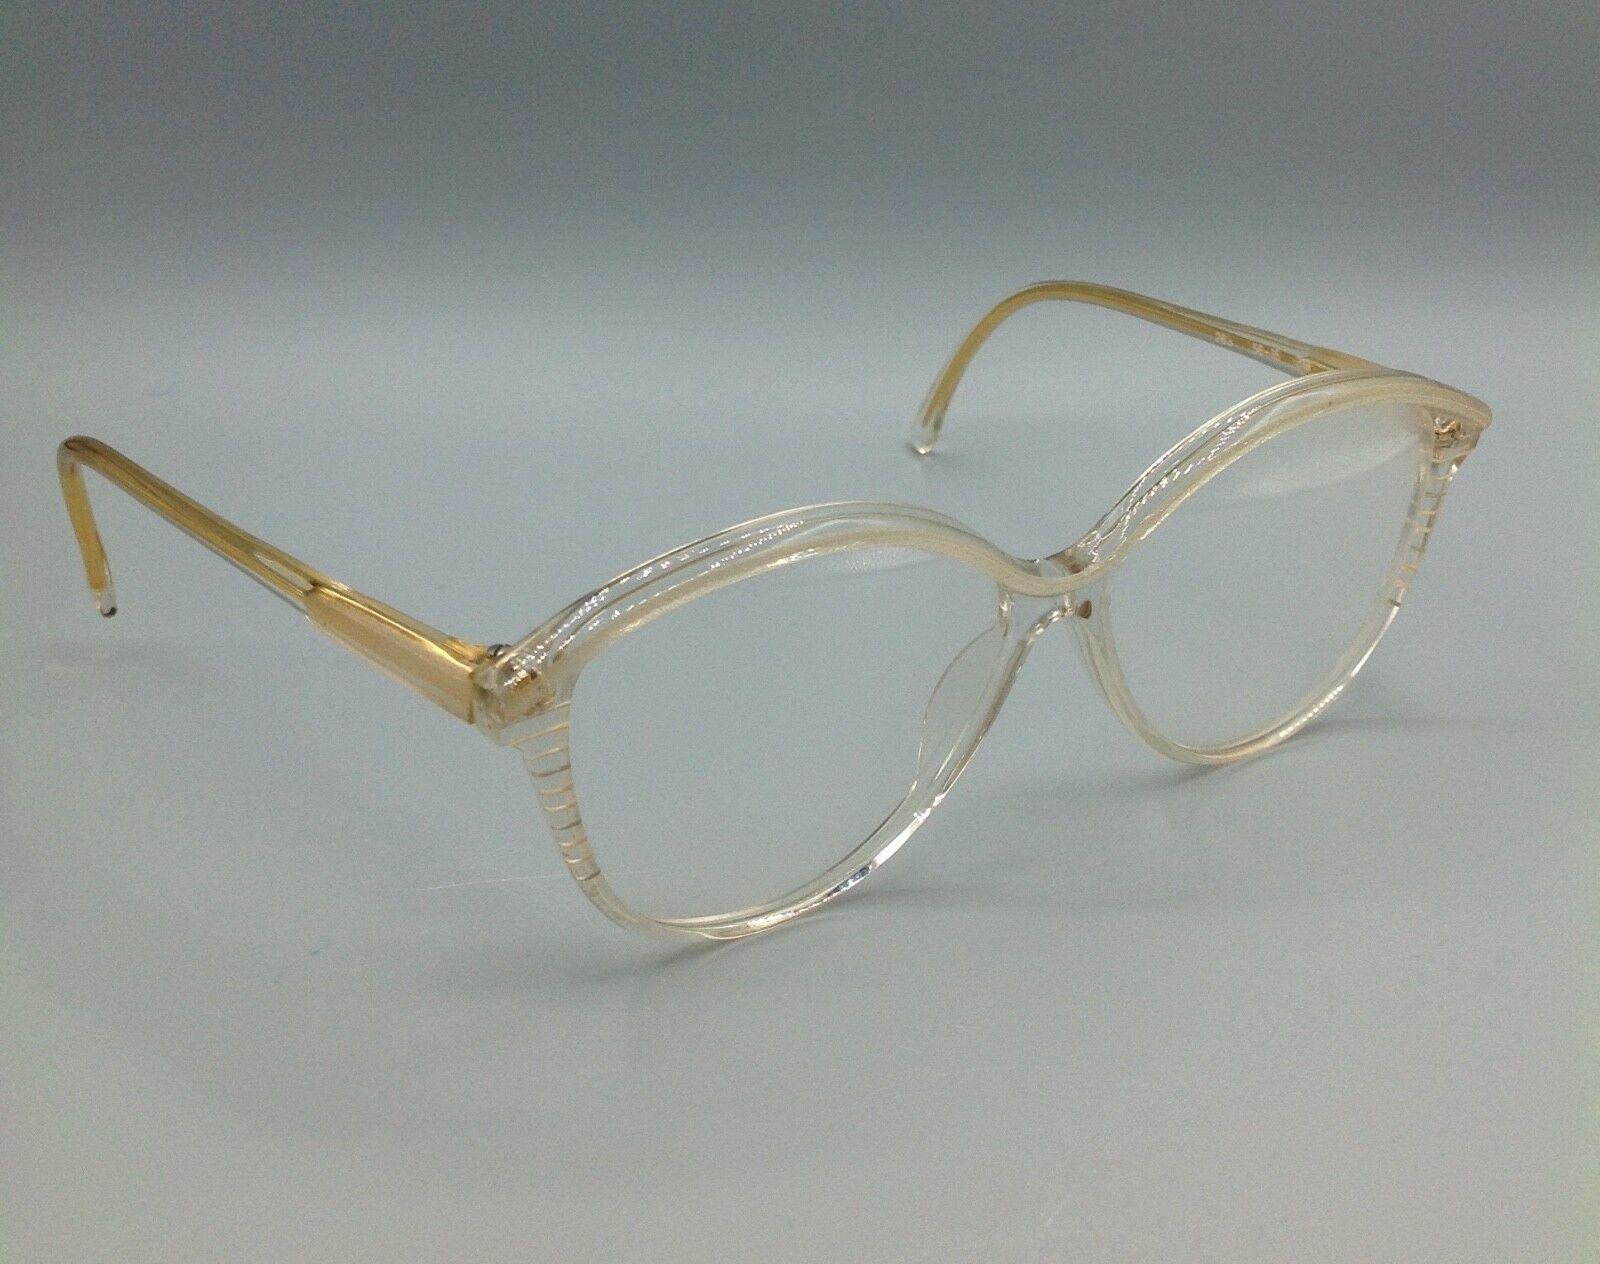 Vogart vintage occhiale model 263 eyewear frame brillen lunettes gafas